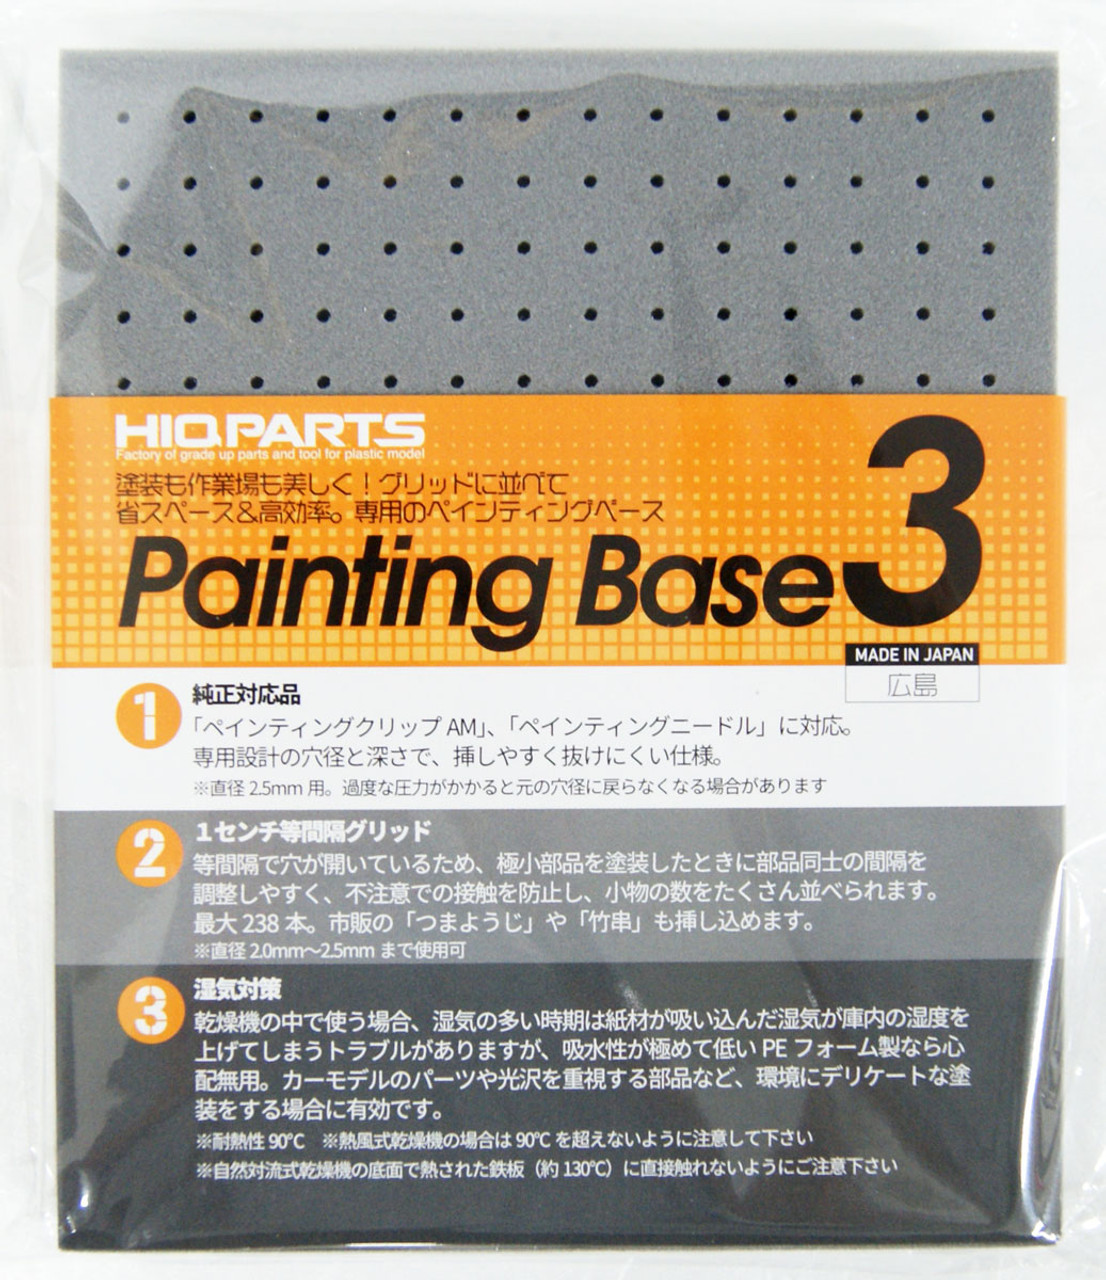 HiQparts PTB3 Painting Base | Model Kits & Parts | Plaza Japan